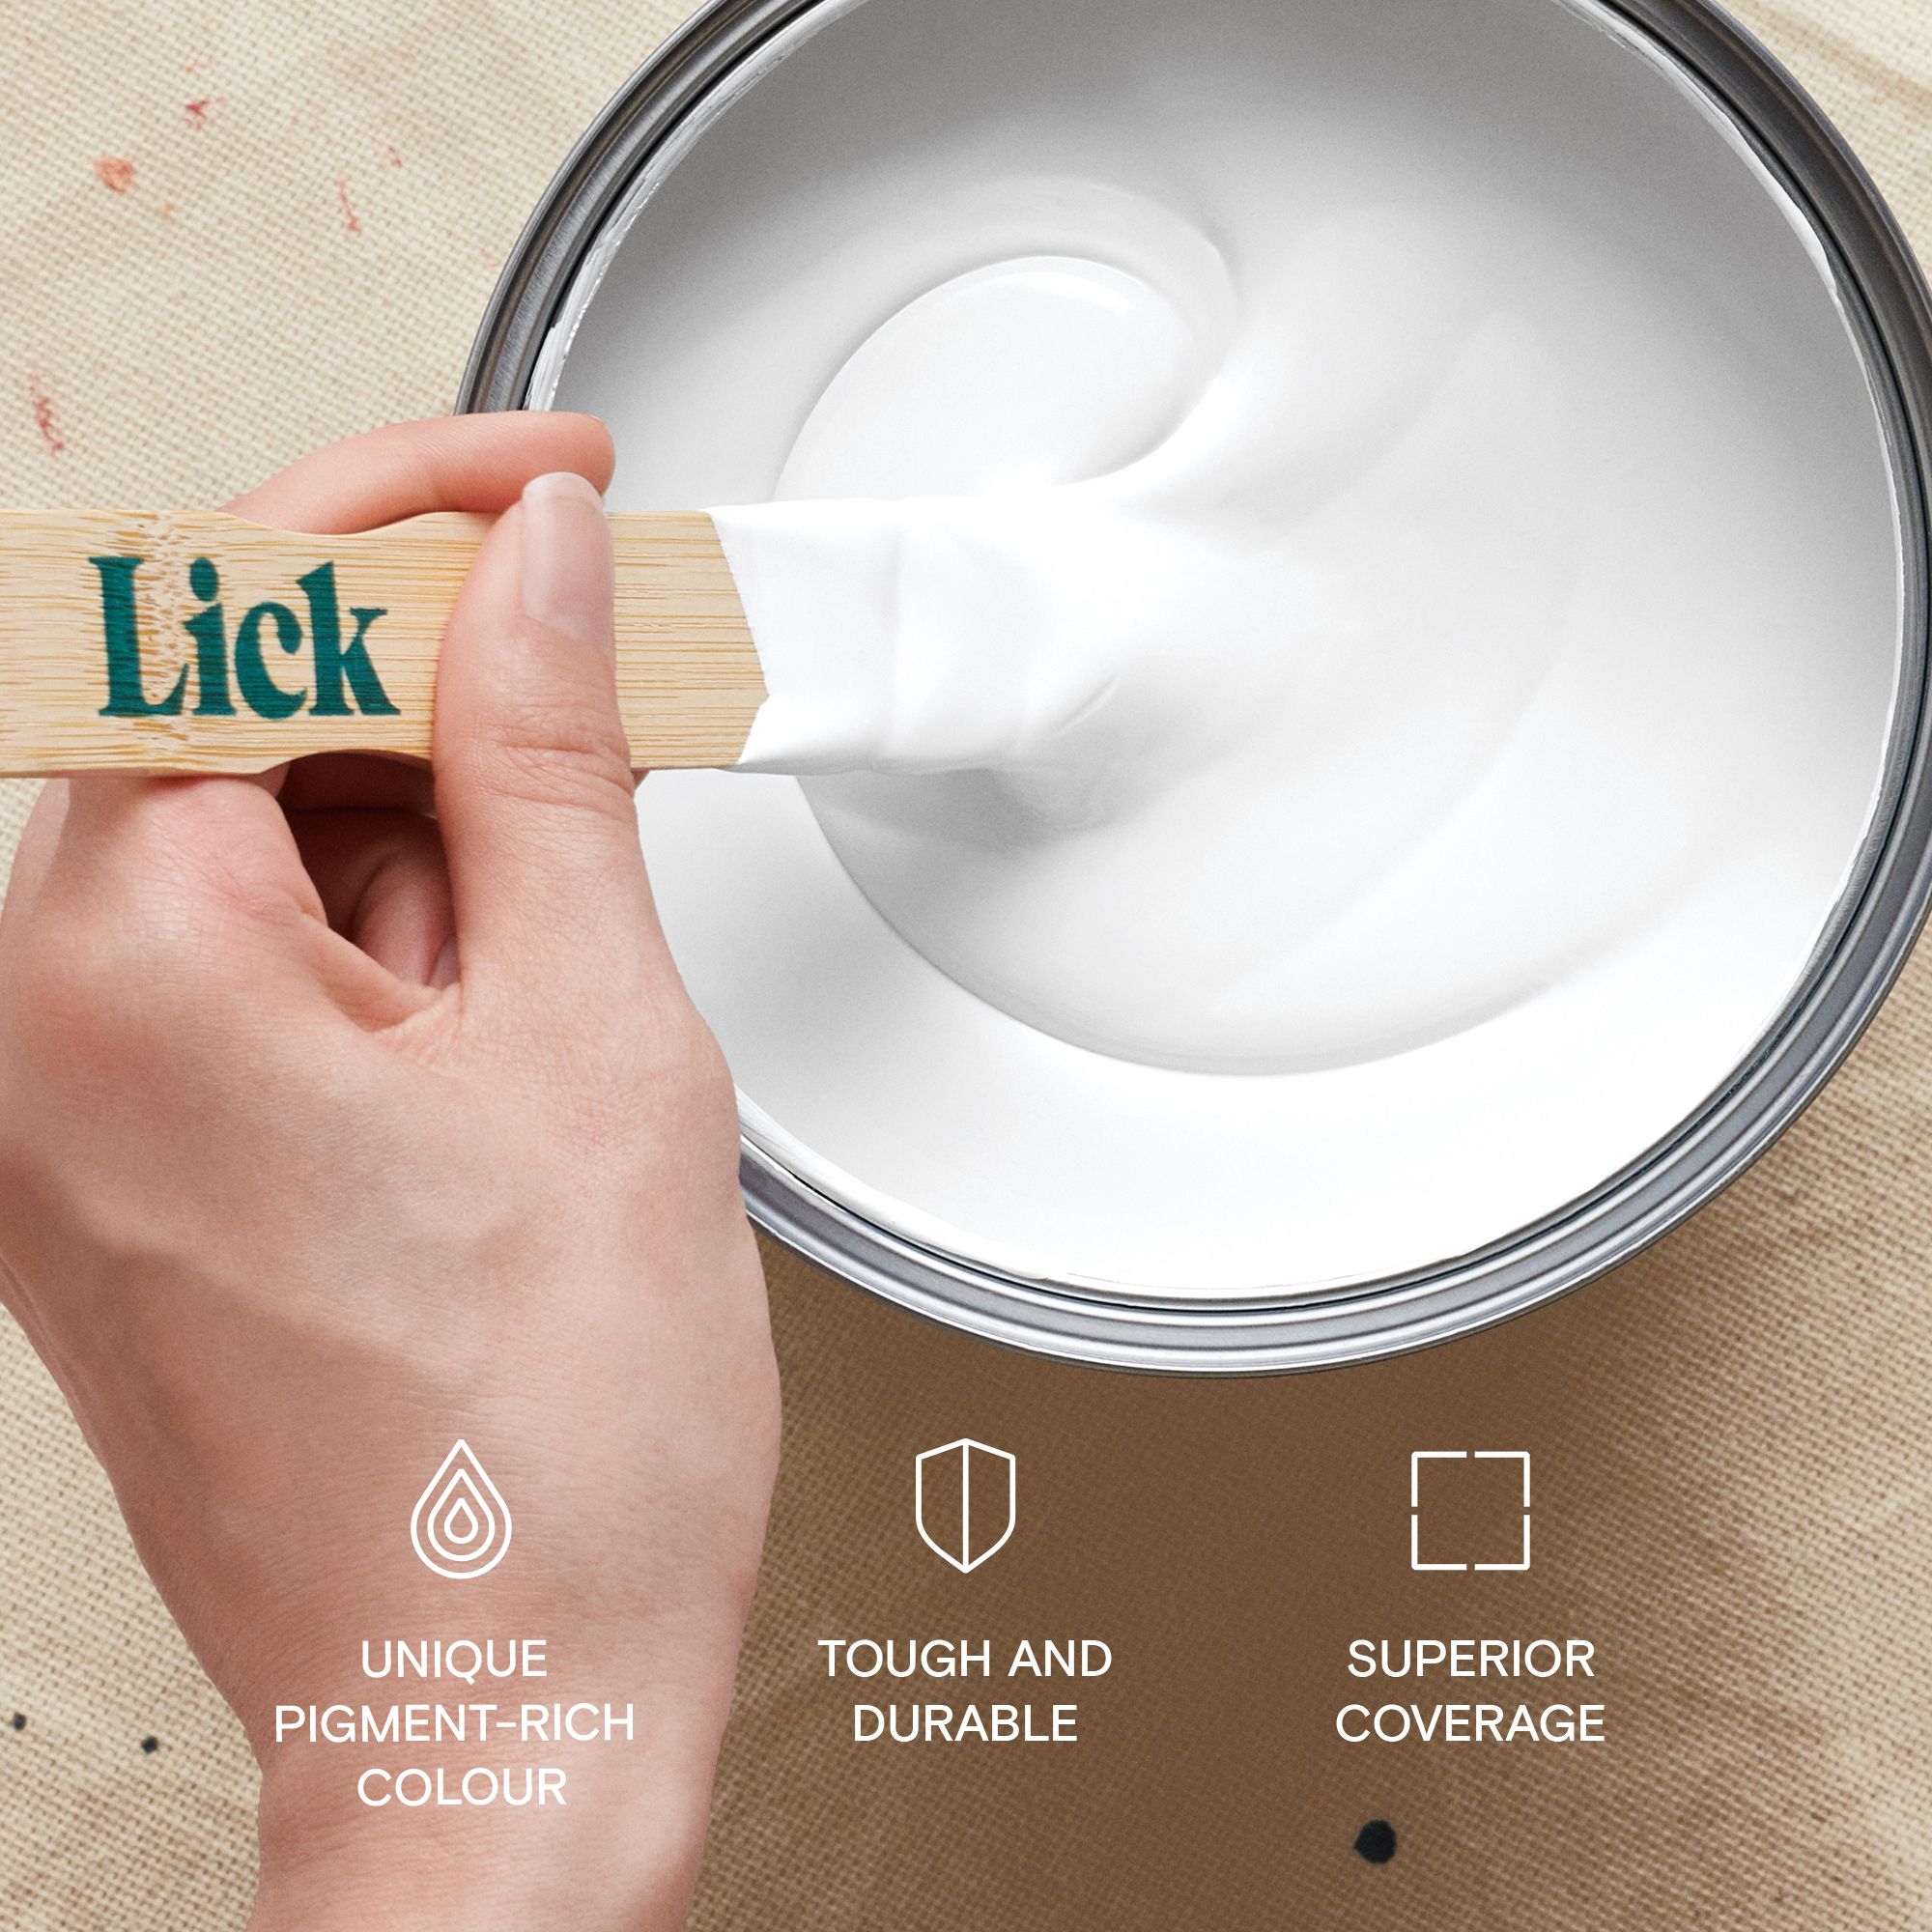 Lick Pure Brilliant White 00 Matt Emulsion paint, 5L